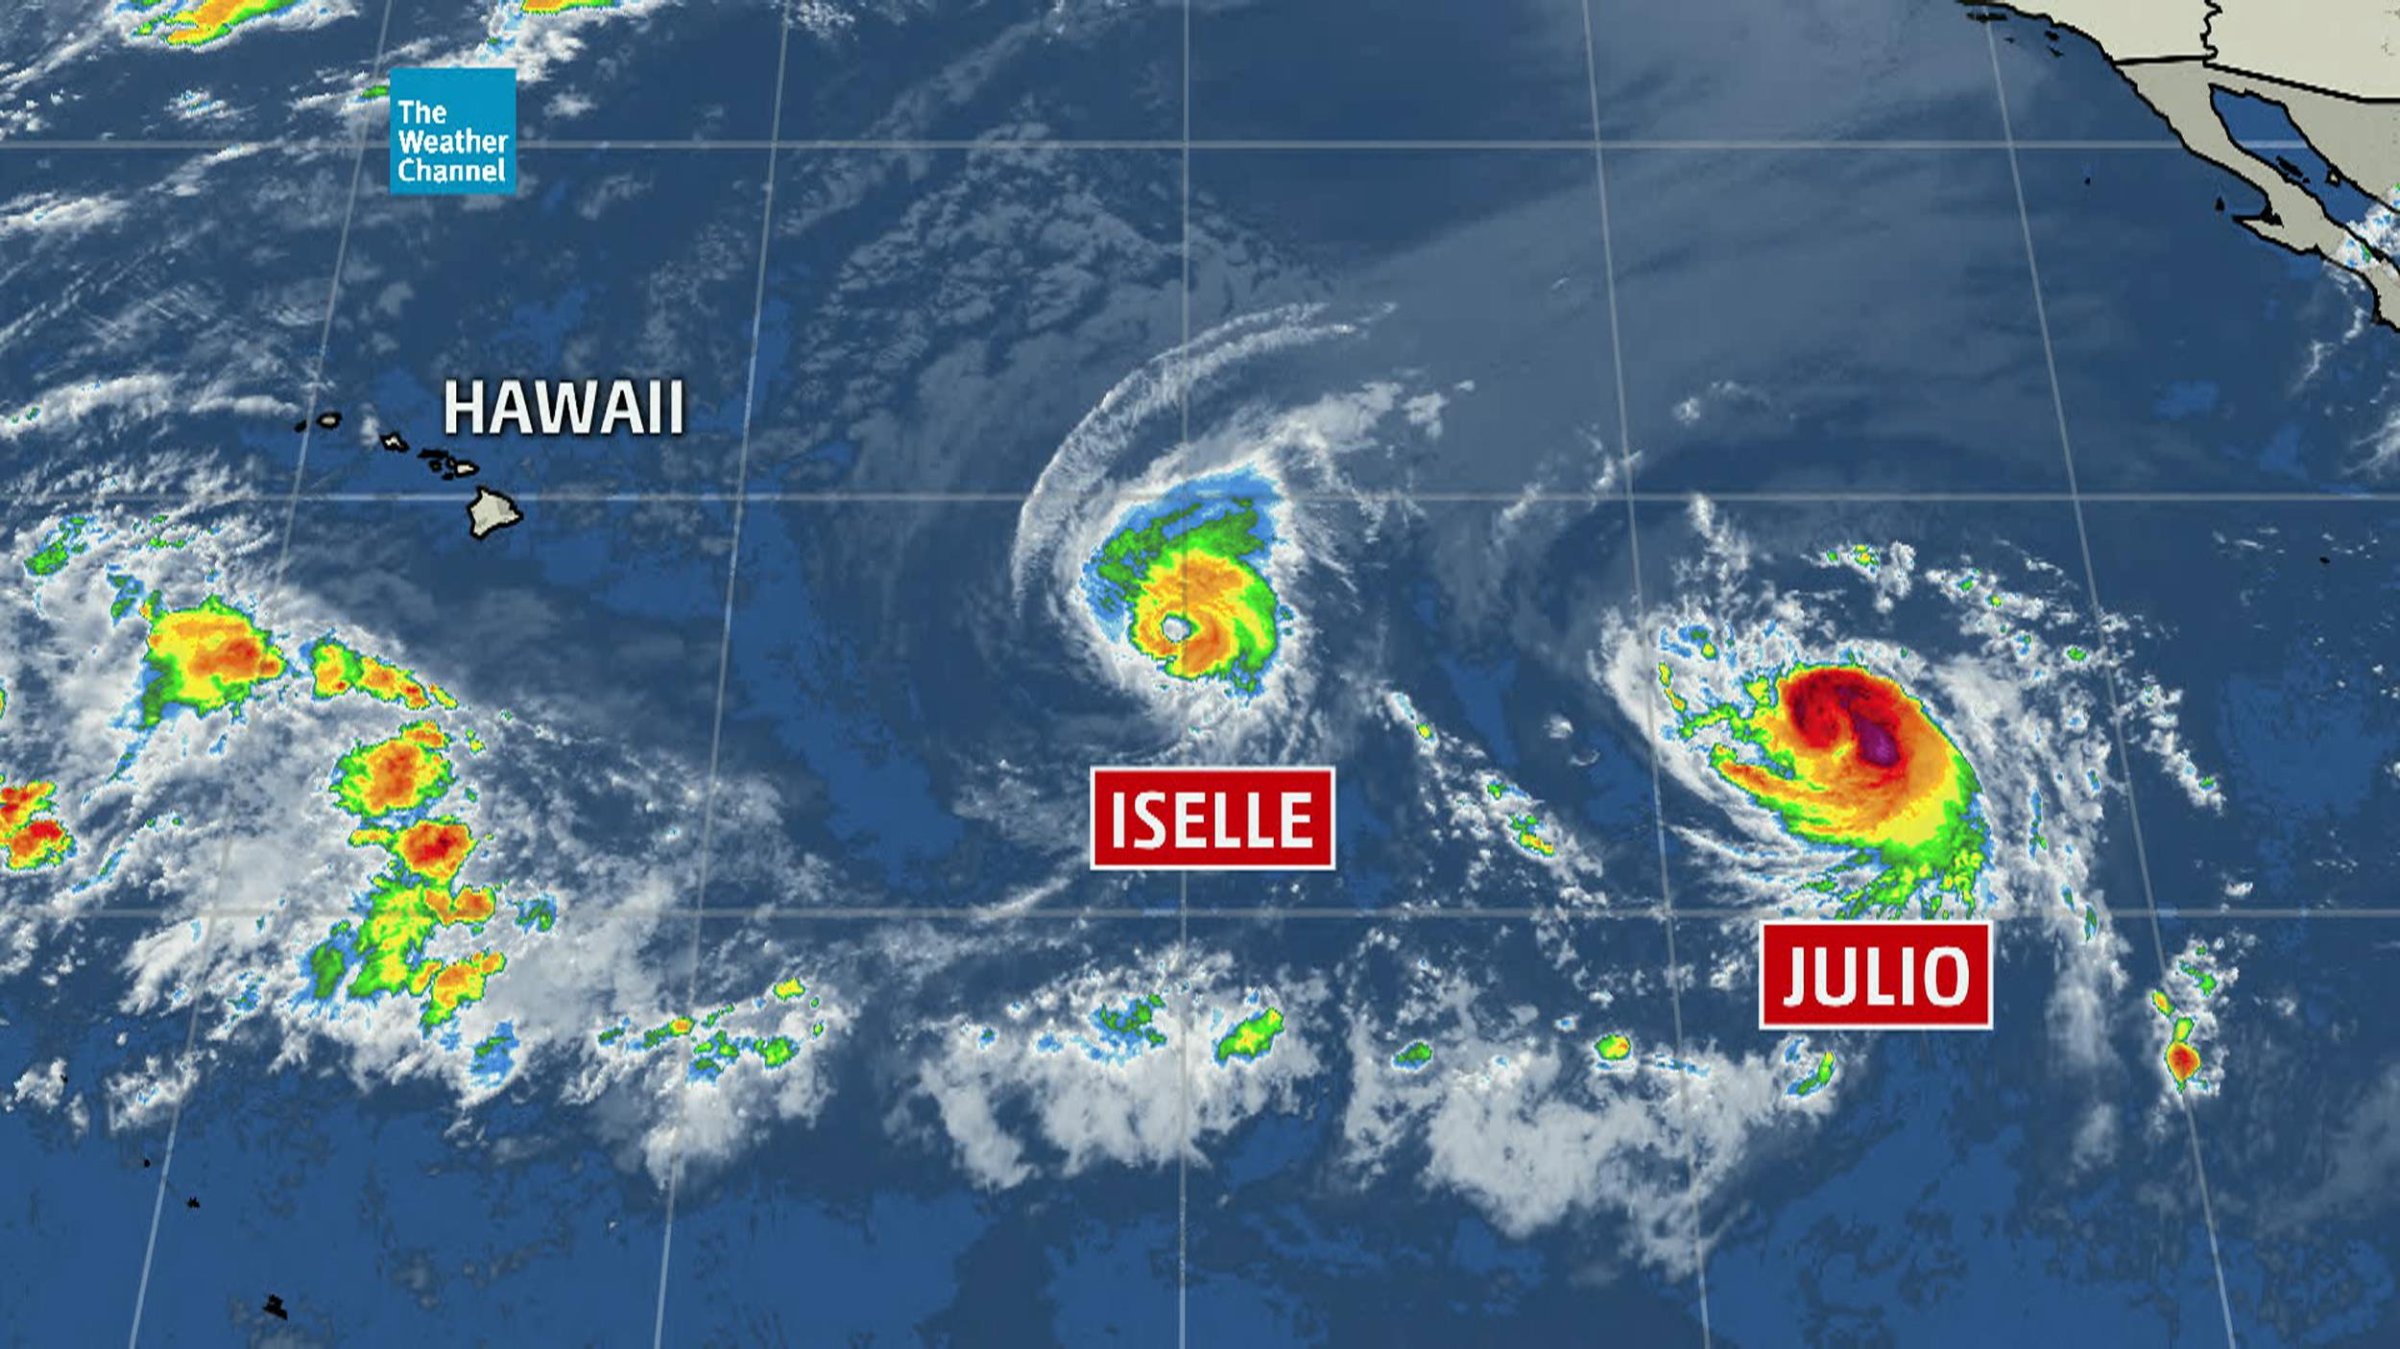 Hawaii Hurricane Iselle Julio